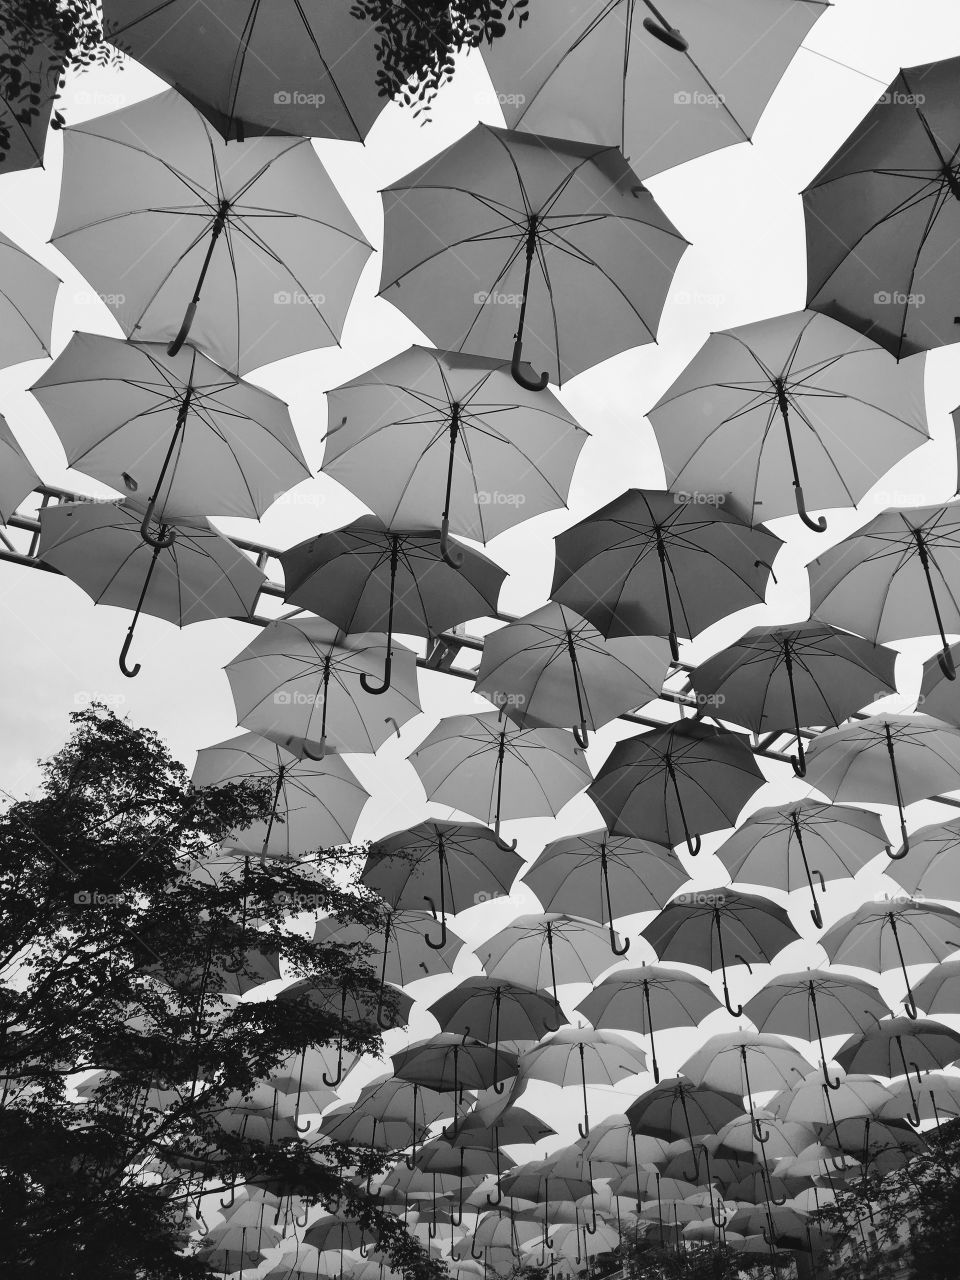 Umbrella Art Installation 